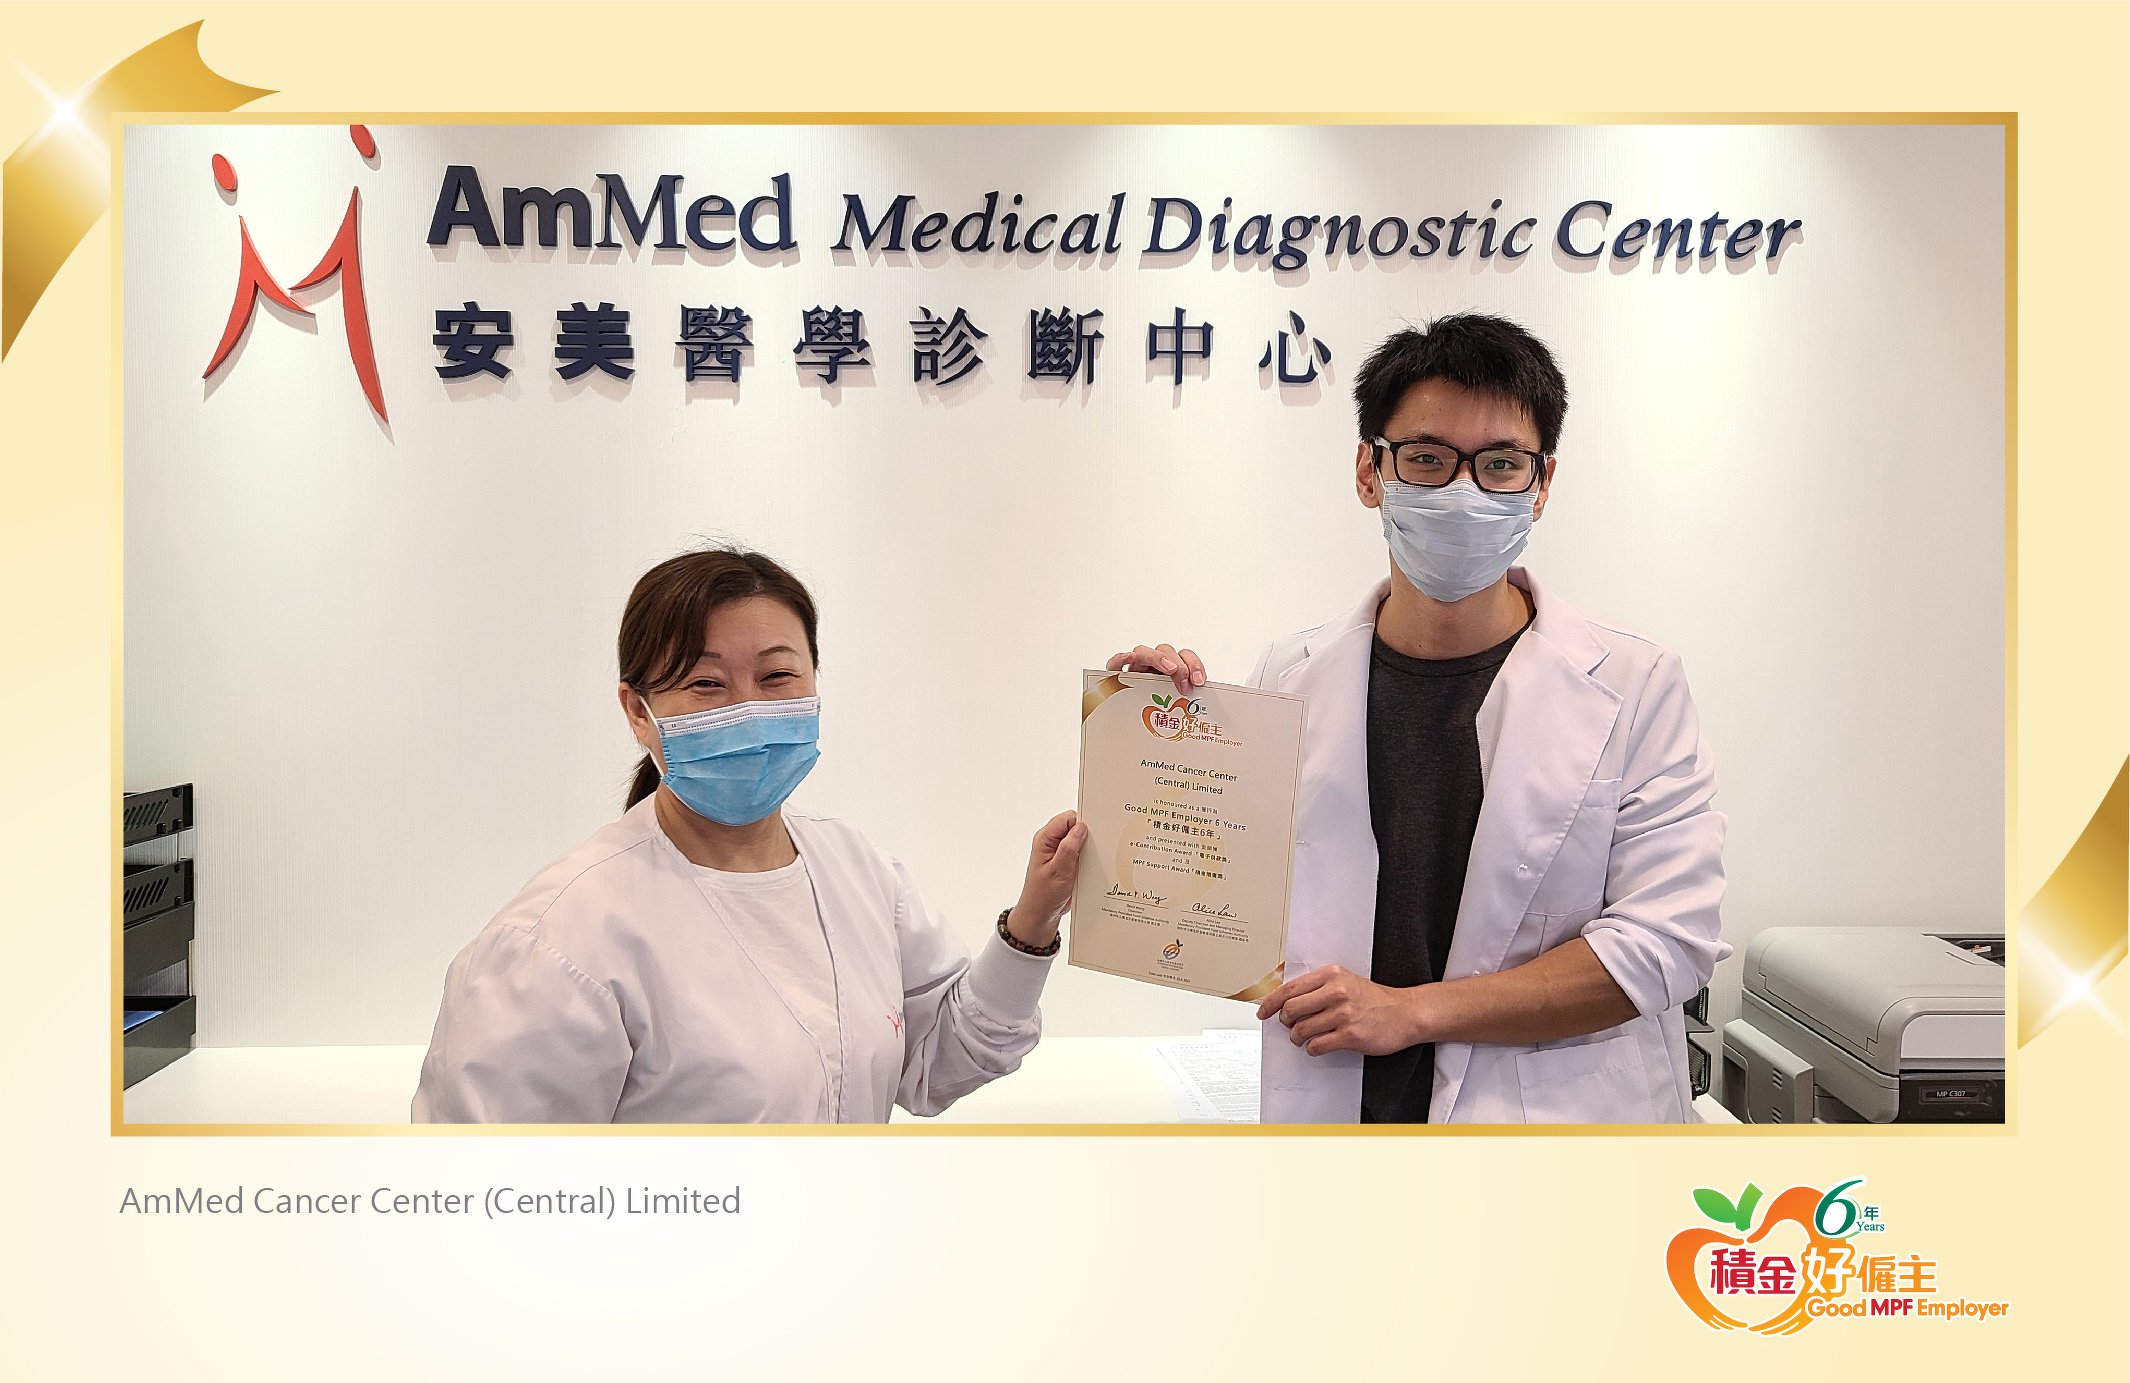 AmMed Cancer Center (Central) Limited